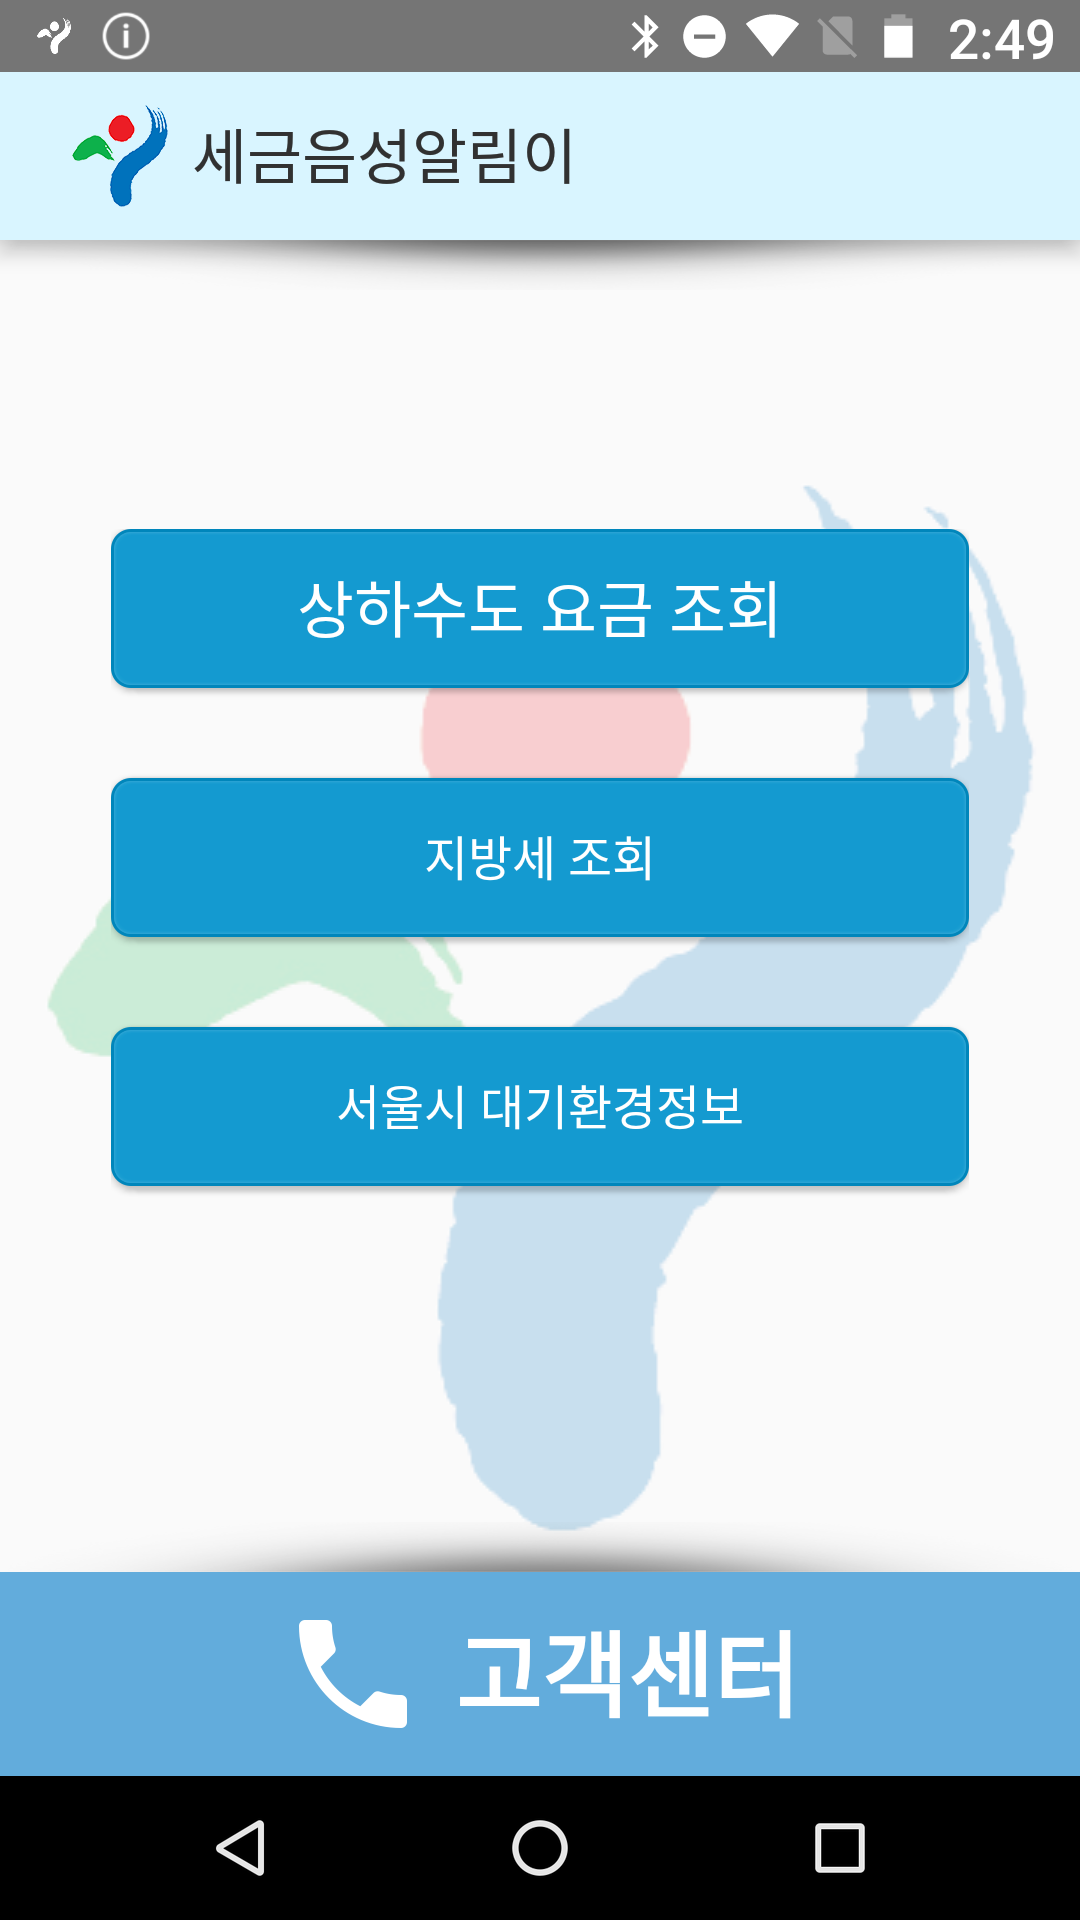 서울특별시 음성알림이 Android ver 0.1.4 스크릿샷